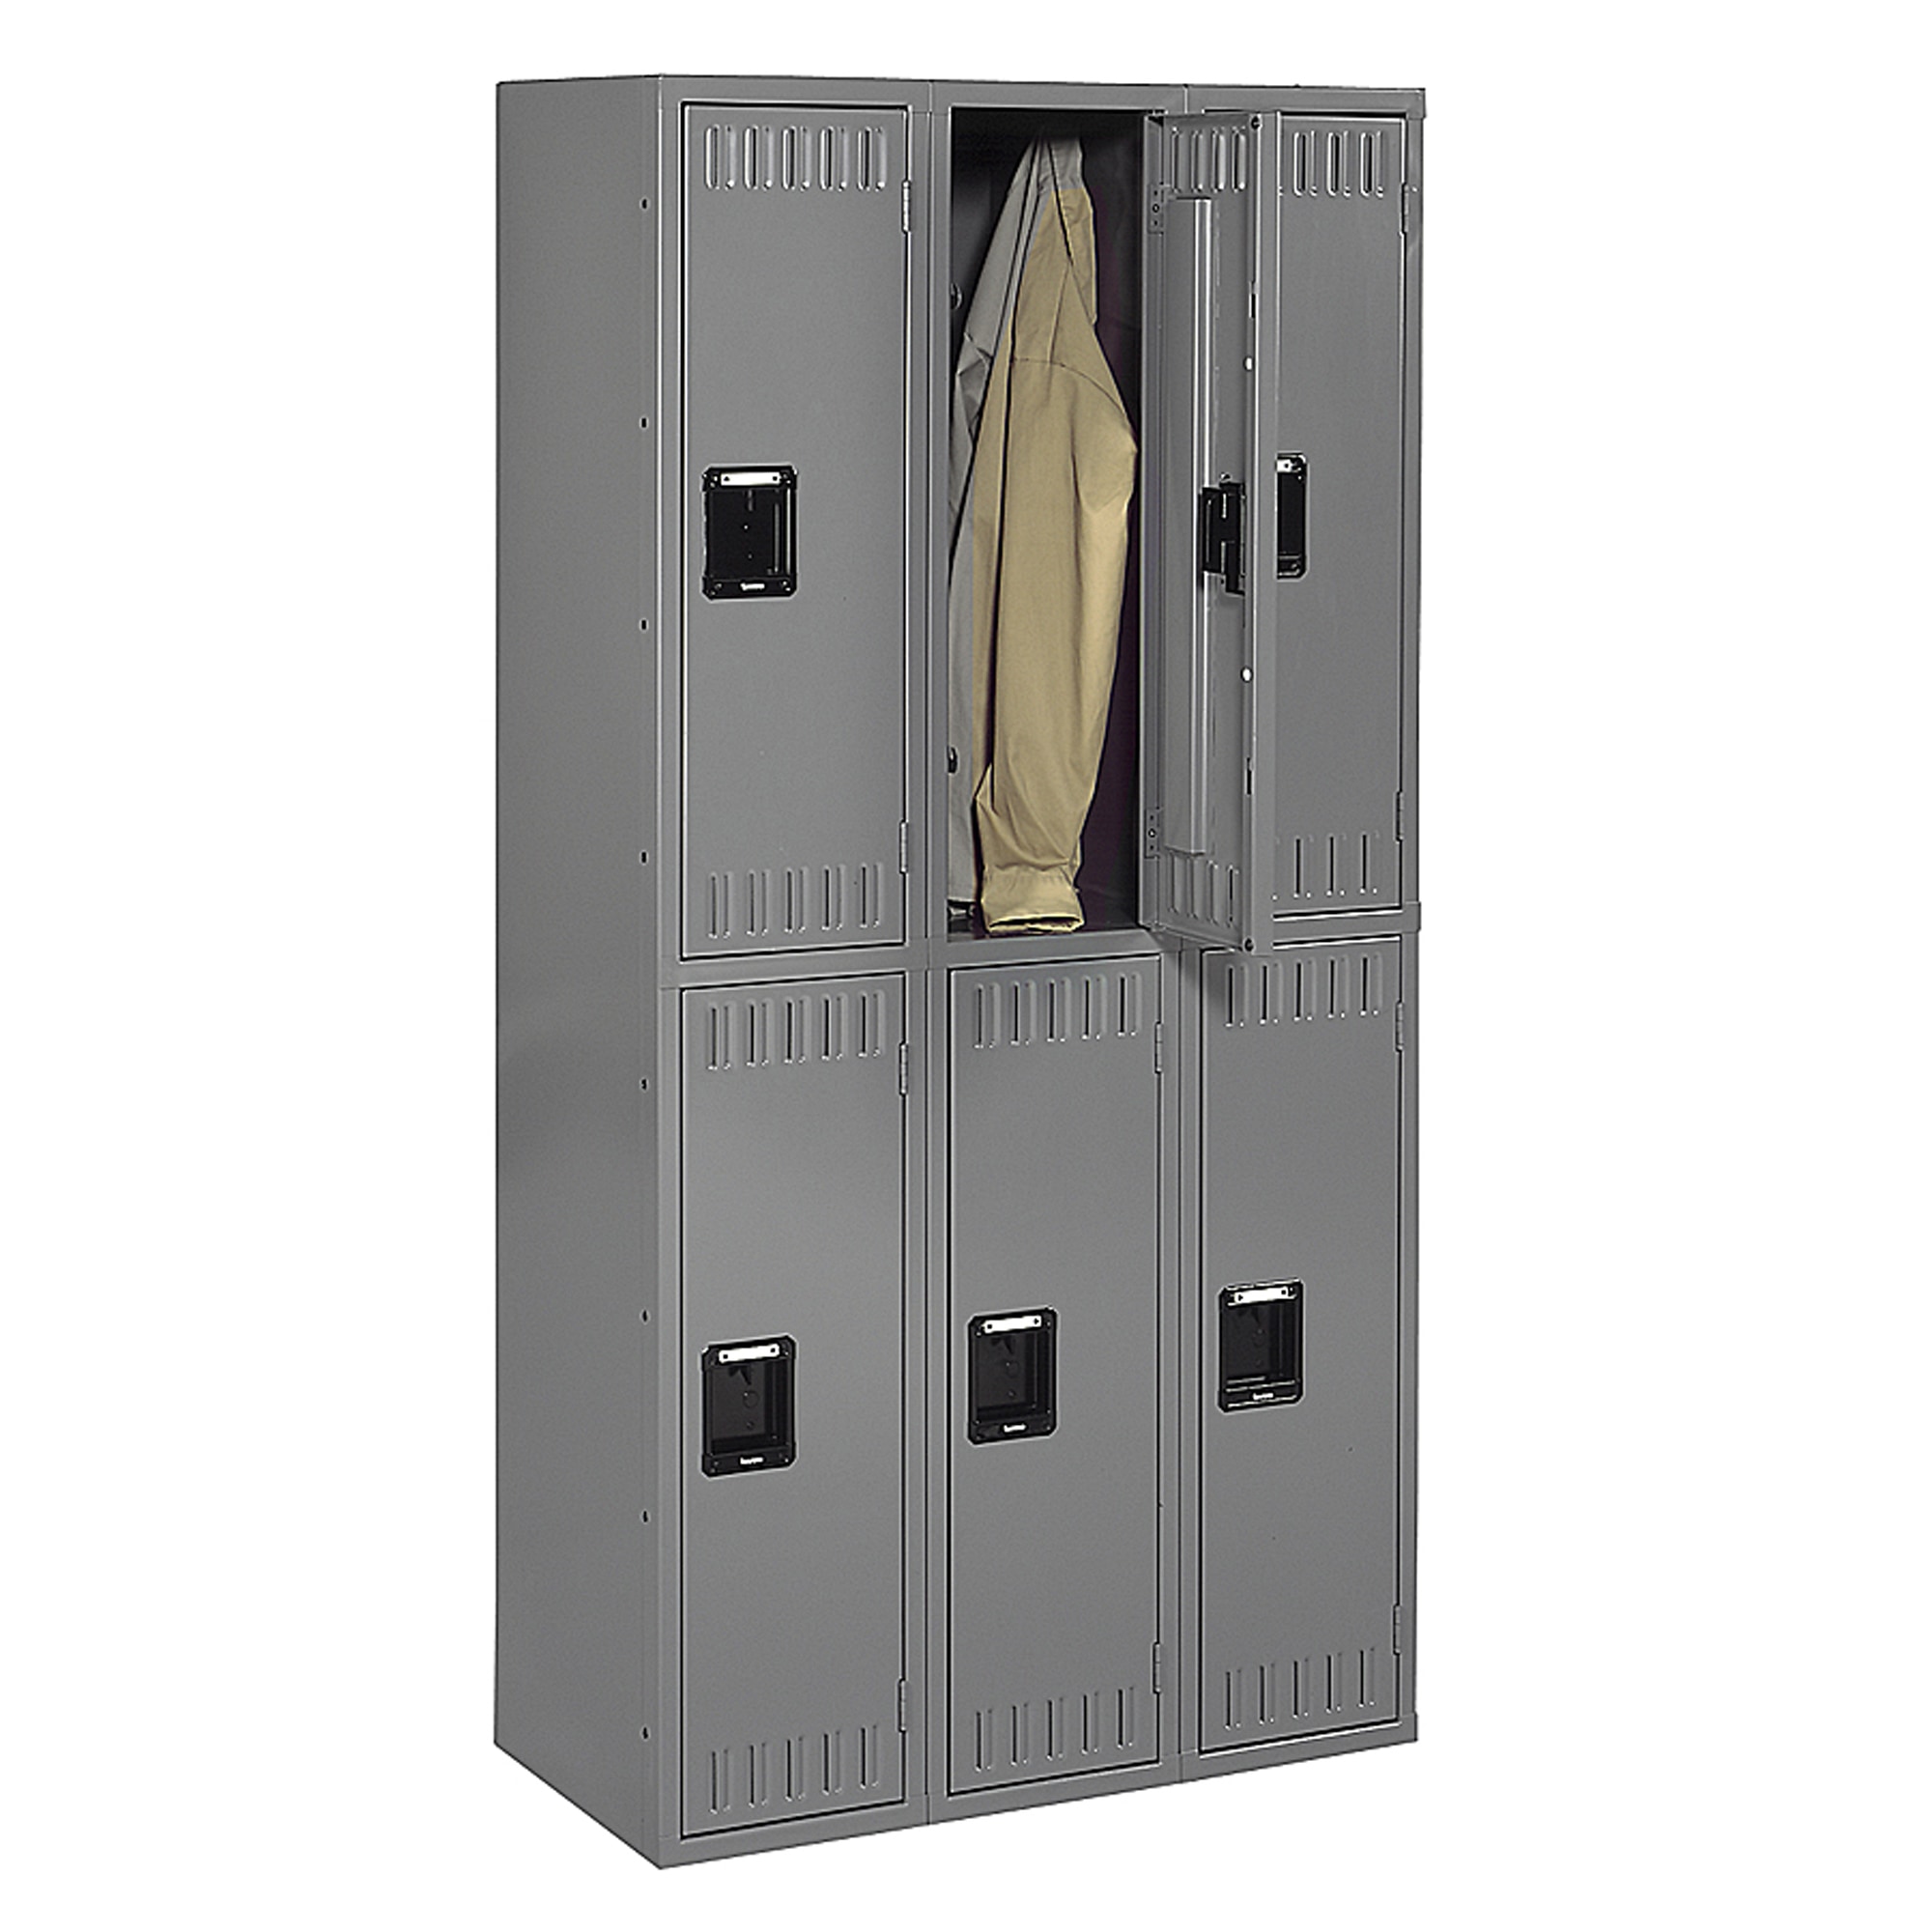 Tennsco Double Tier Locker, Triple Stack, 36"W x 18"D x 72"H - image 1 of 2